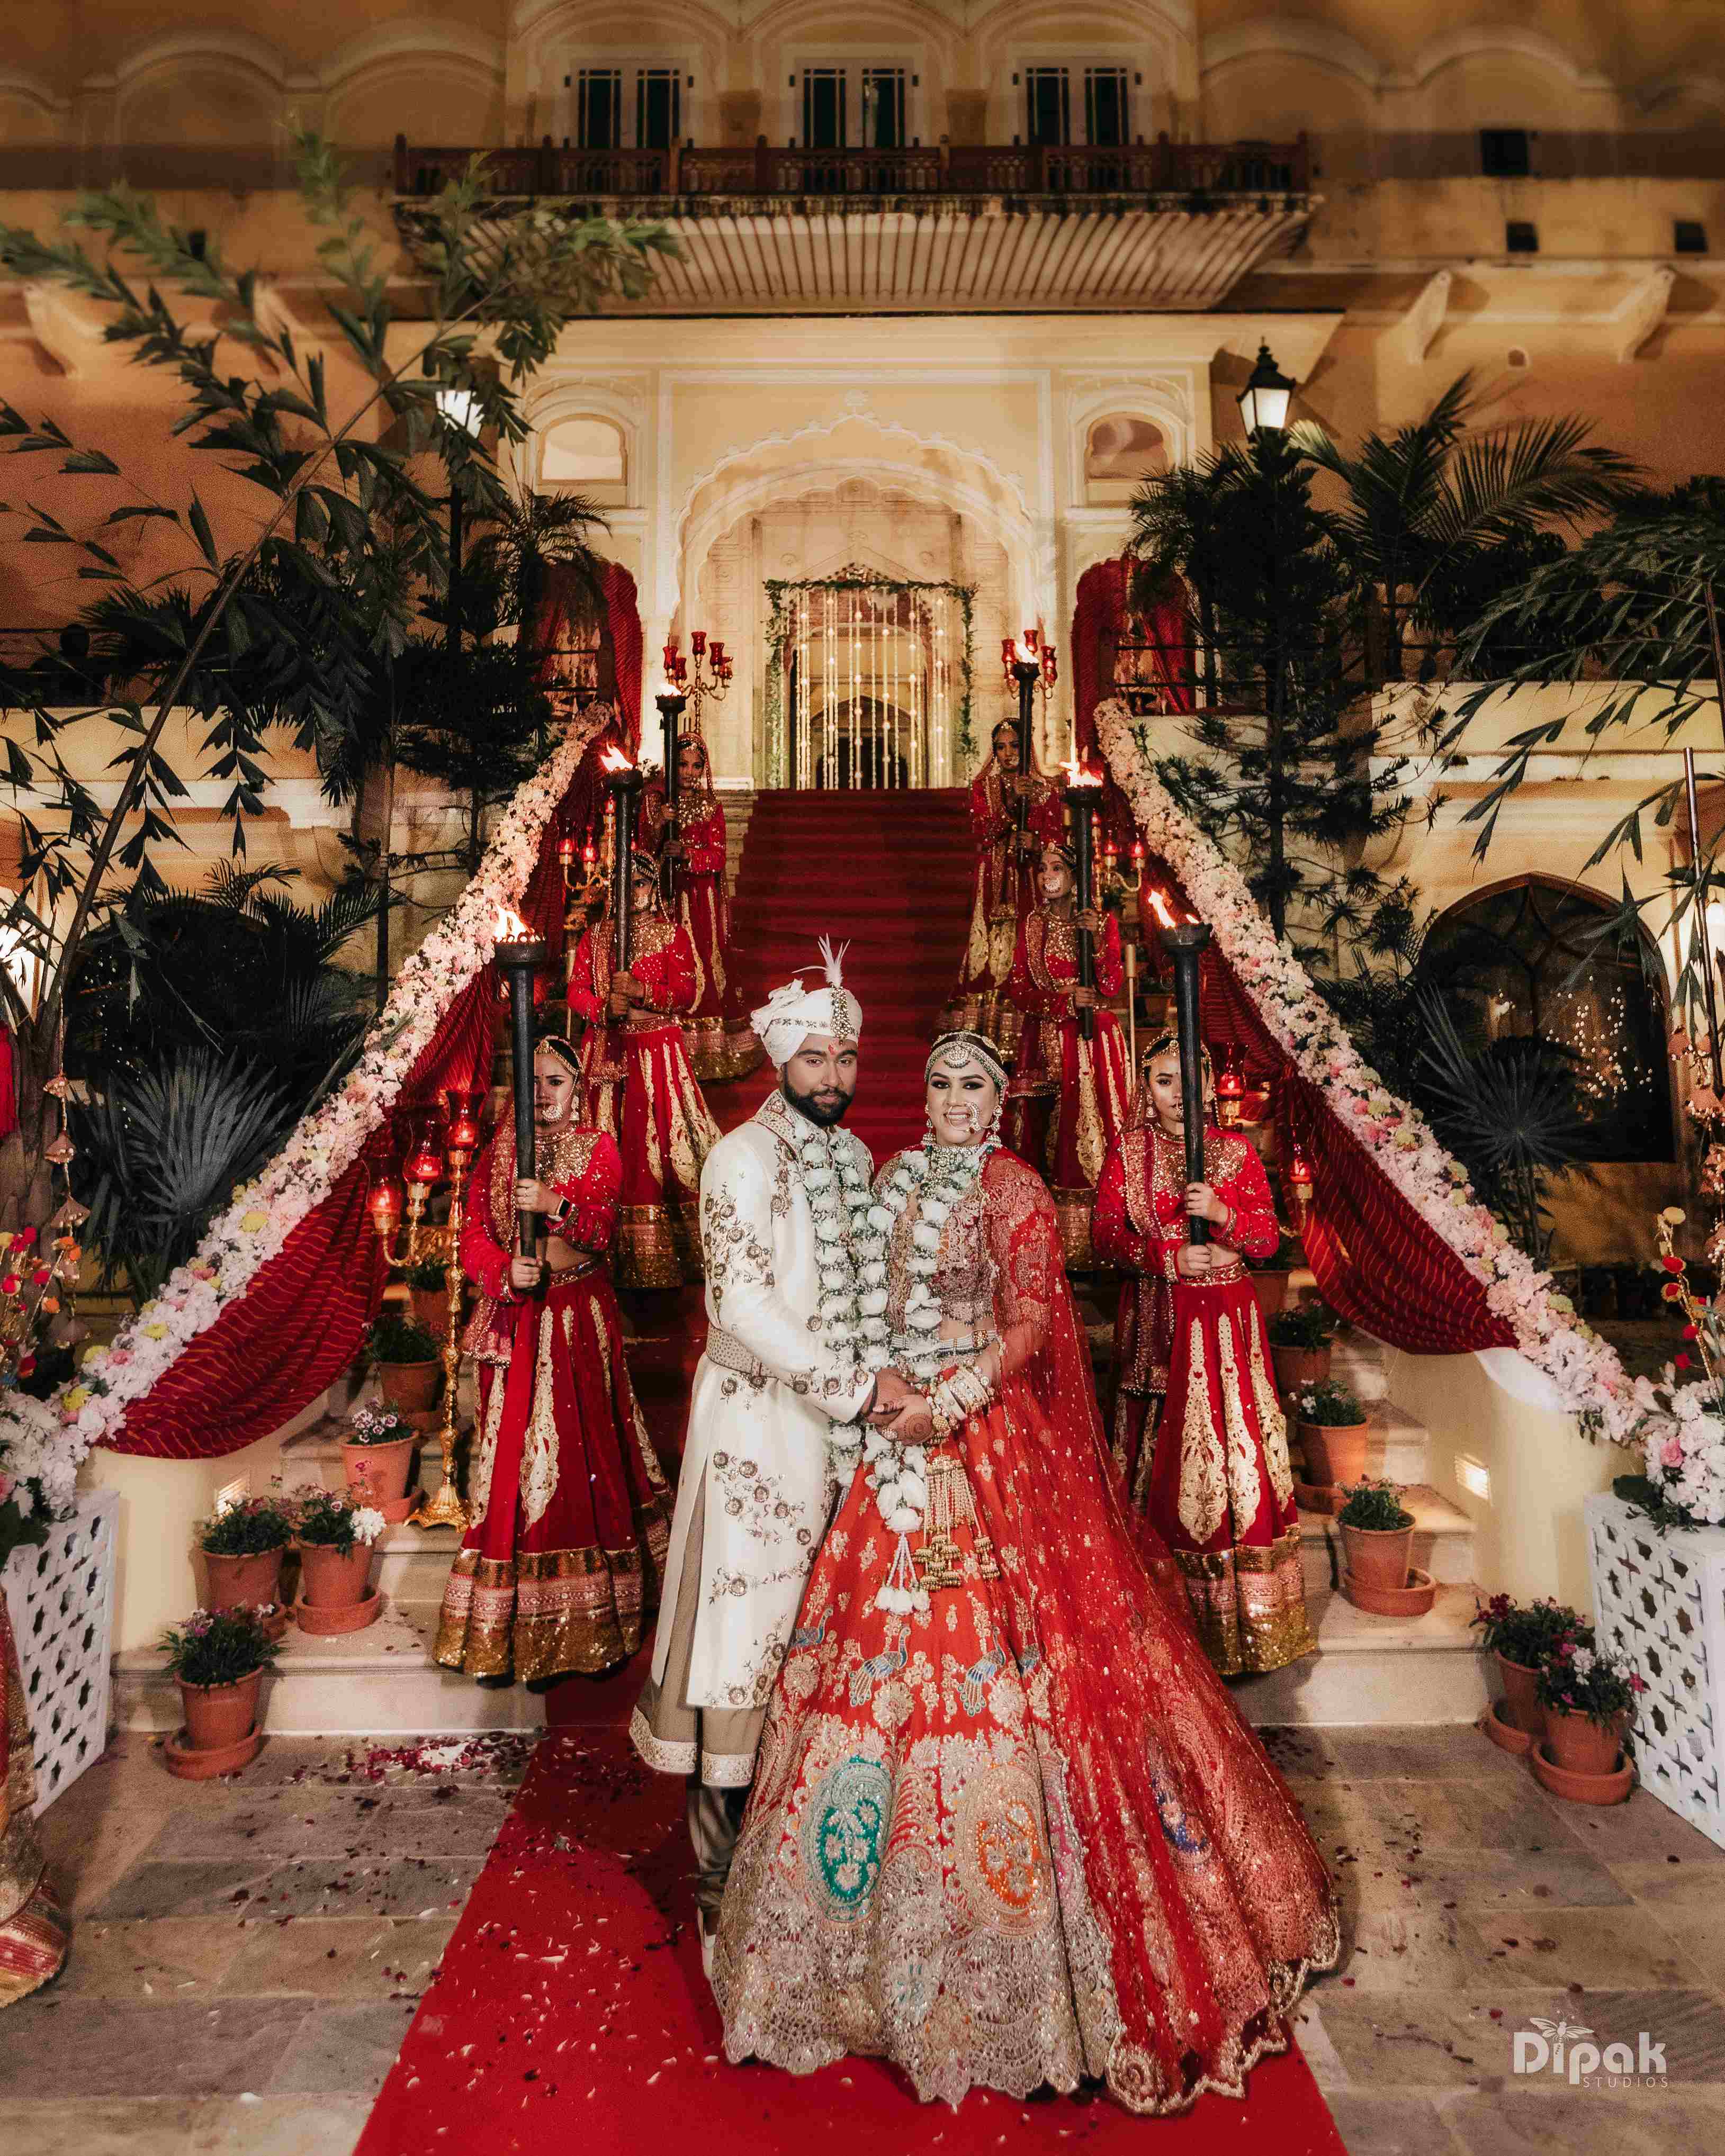 Mrignaini & Arshdeep’s Royal Wedding At Jaipur’s Samode Palace